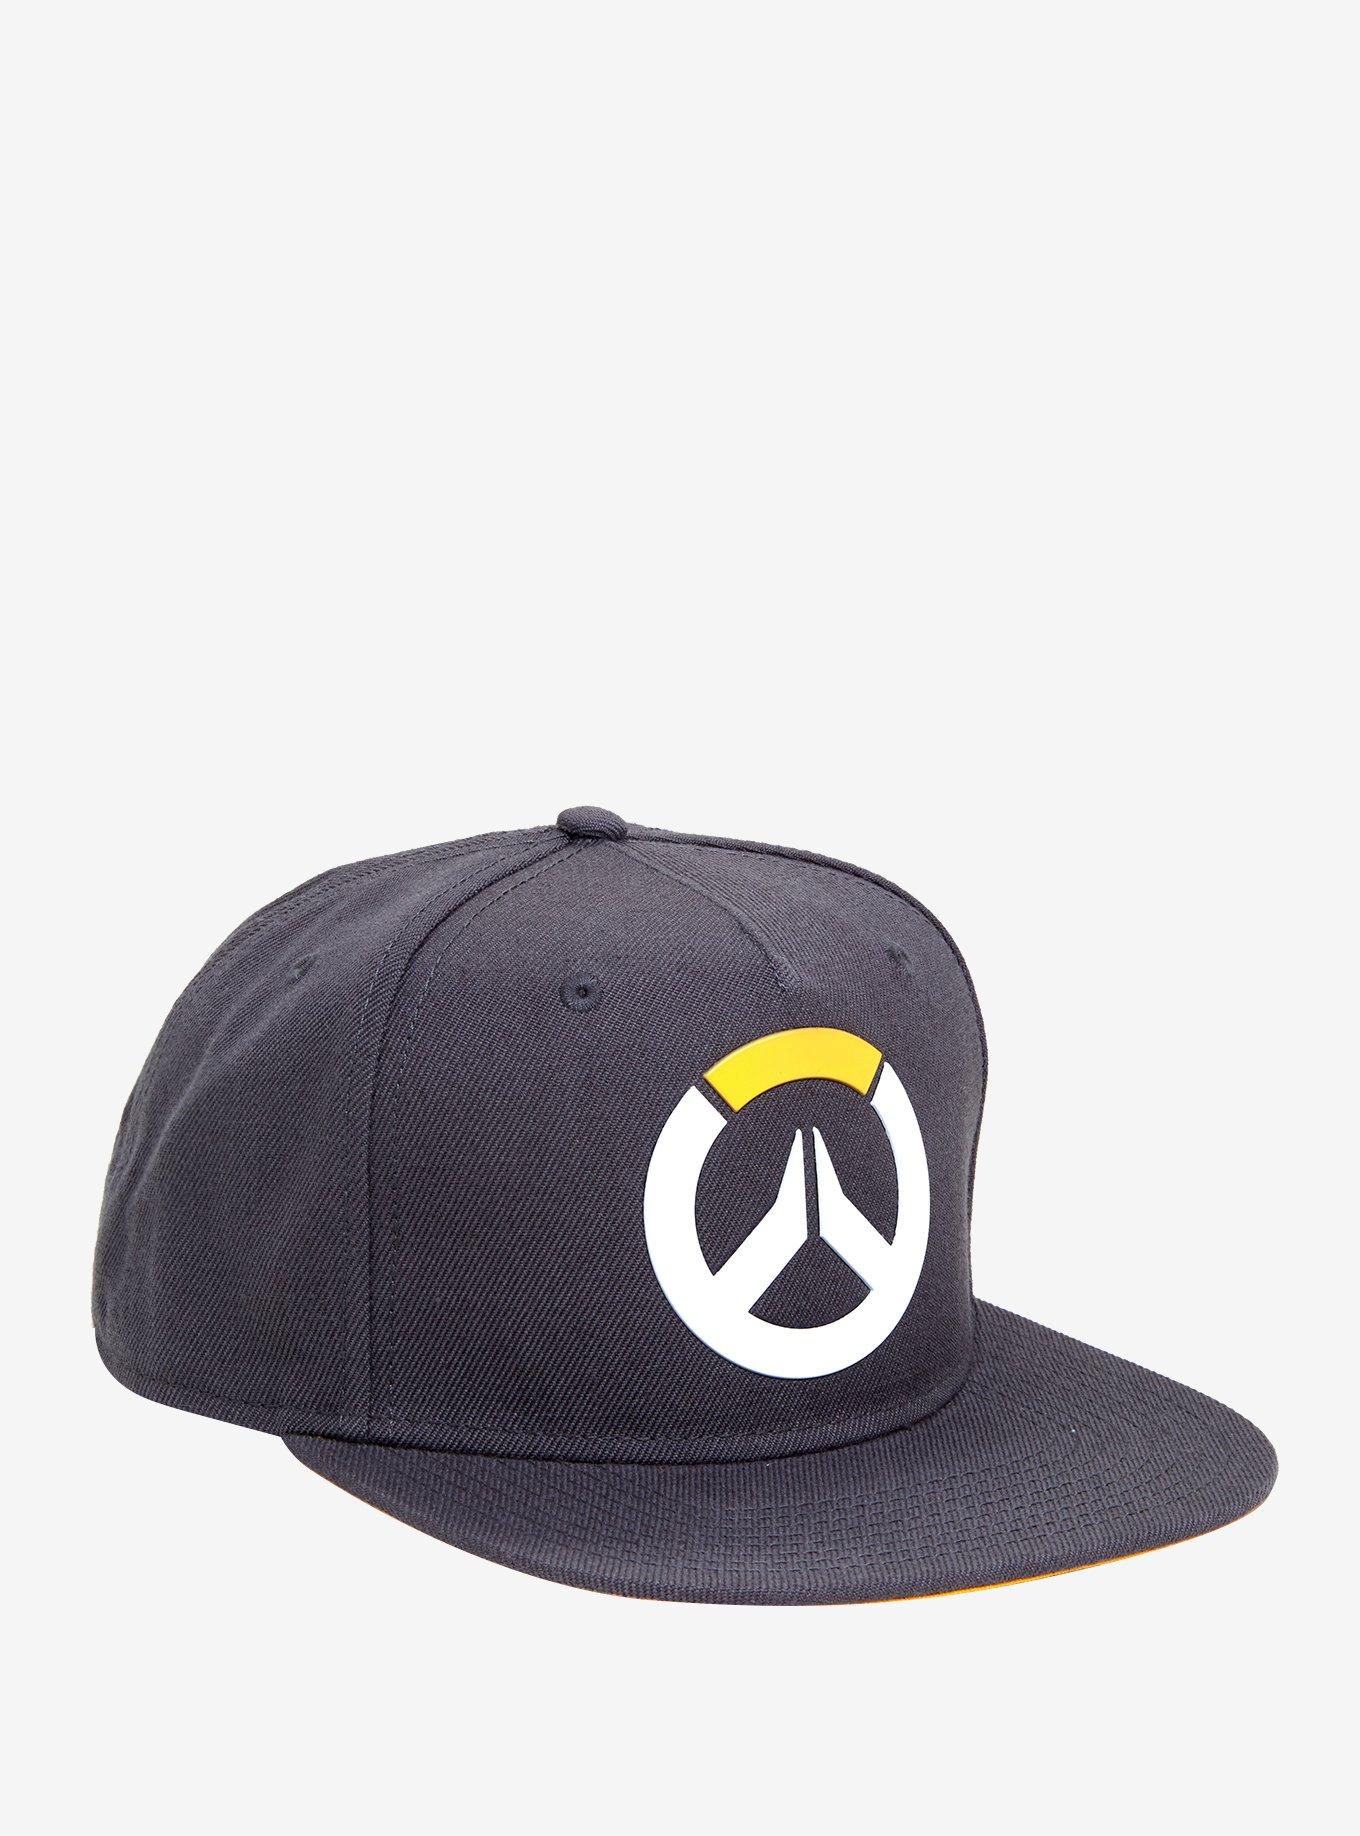 Overwatch Grey Snapback Hat, , hi-res